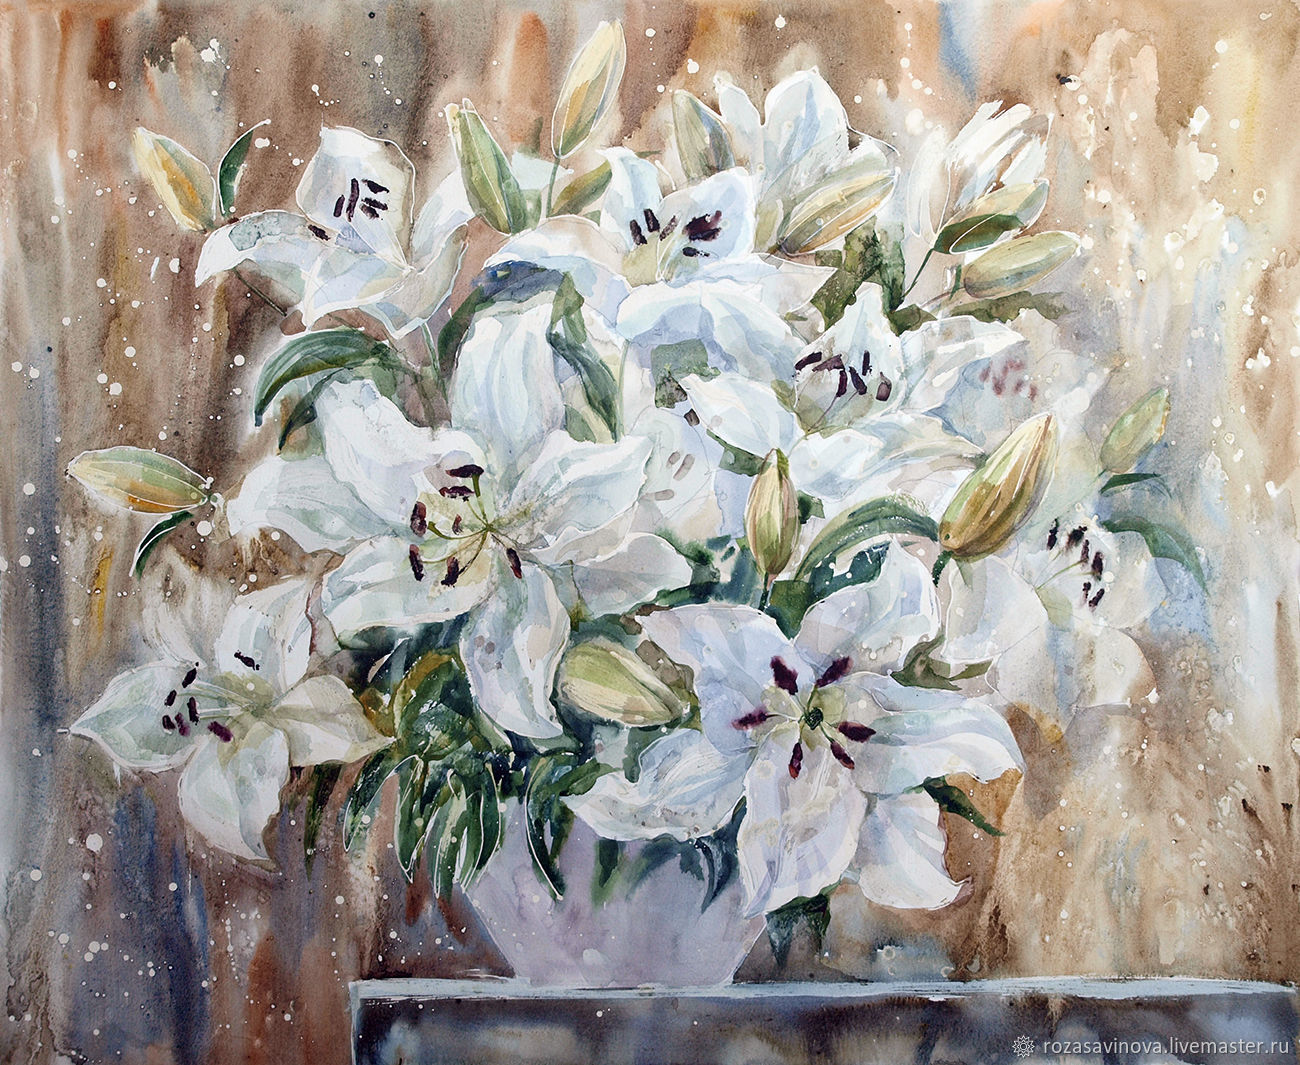 Лилия зимой. Белые лилии акварелью. “Картина с белыми лилиями” rfylbycrbq. Лилии букет акварель. Белые лилии в живописи.